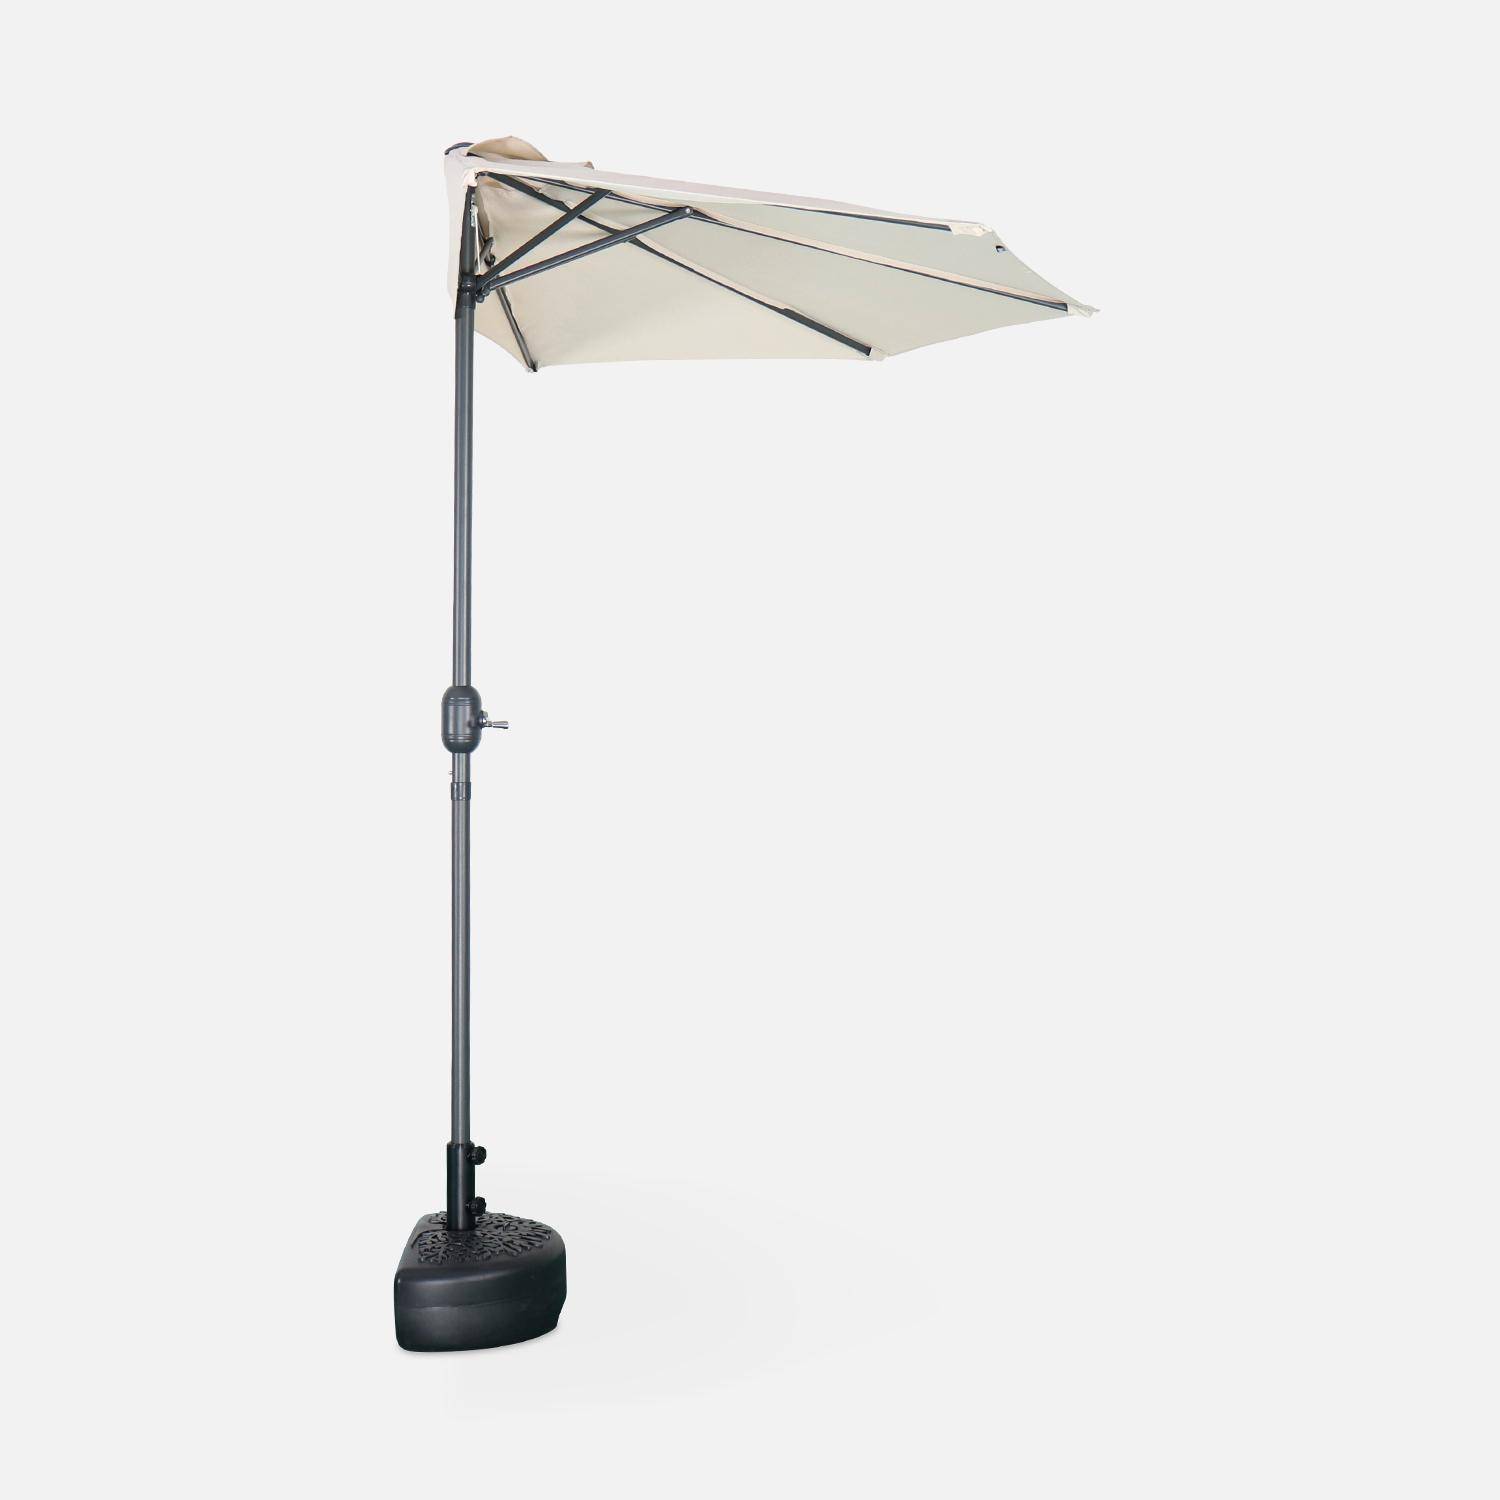  Parasol de balcon Ø250cm  – CALVI – Demi-parasol droit, mât en aluminium avec manivelle d’ouverture, toile sable Photo4